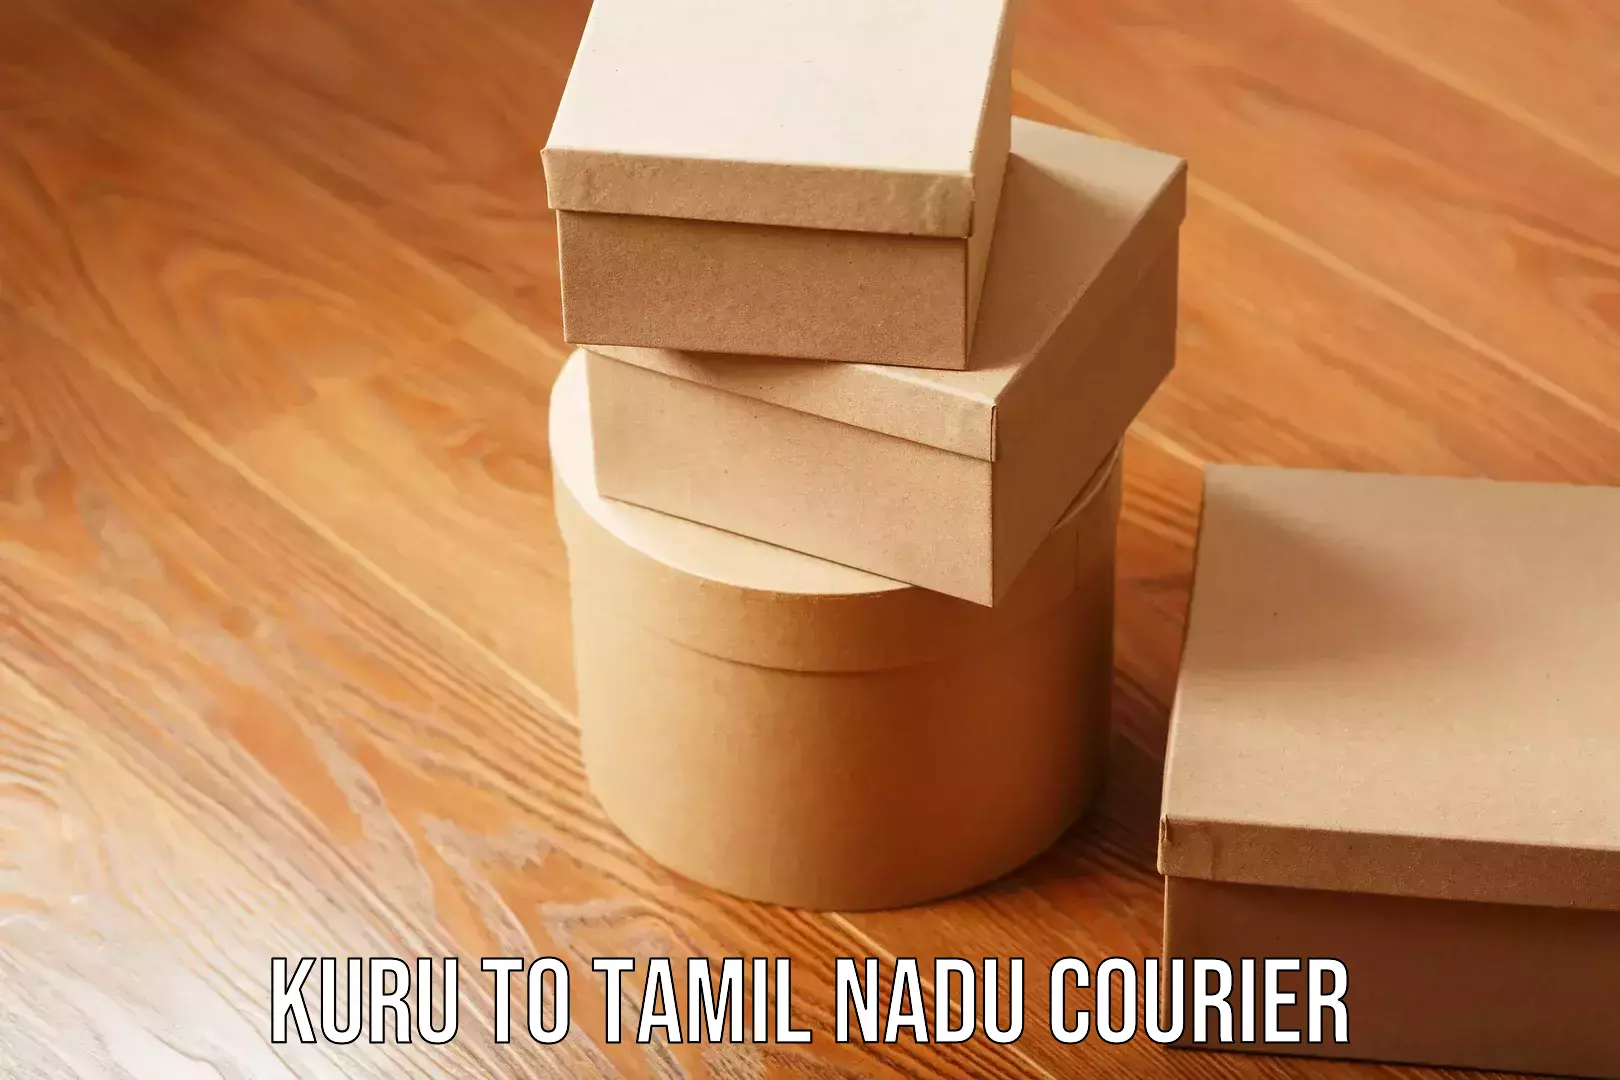 Furniture logistics Kuru to Tamil Nadu